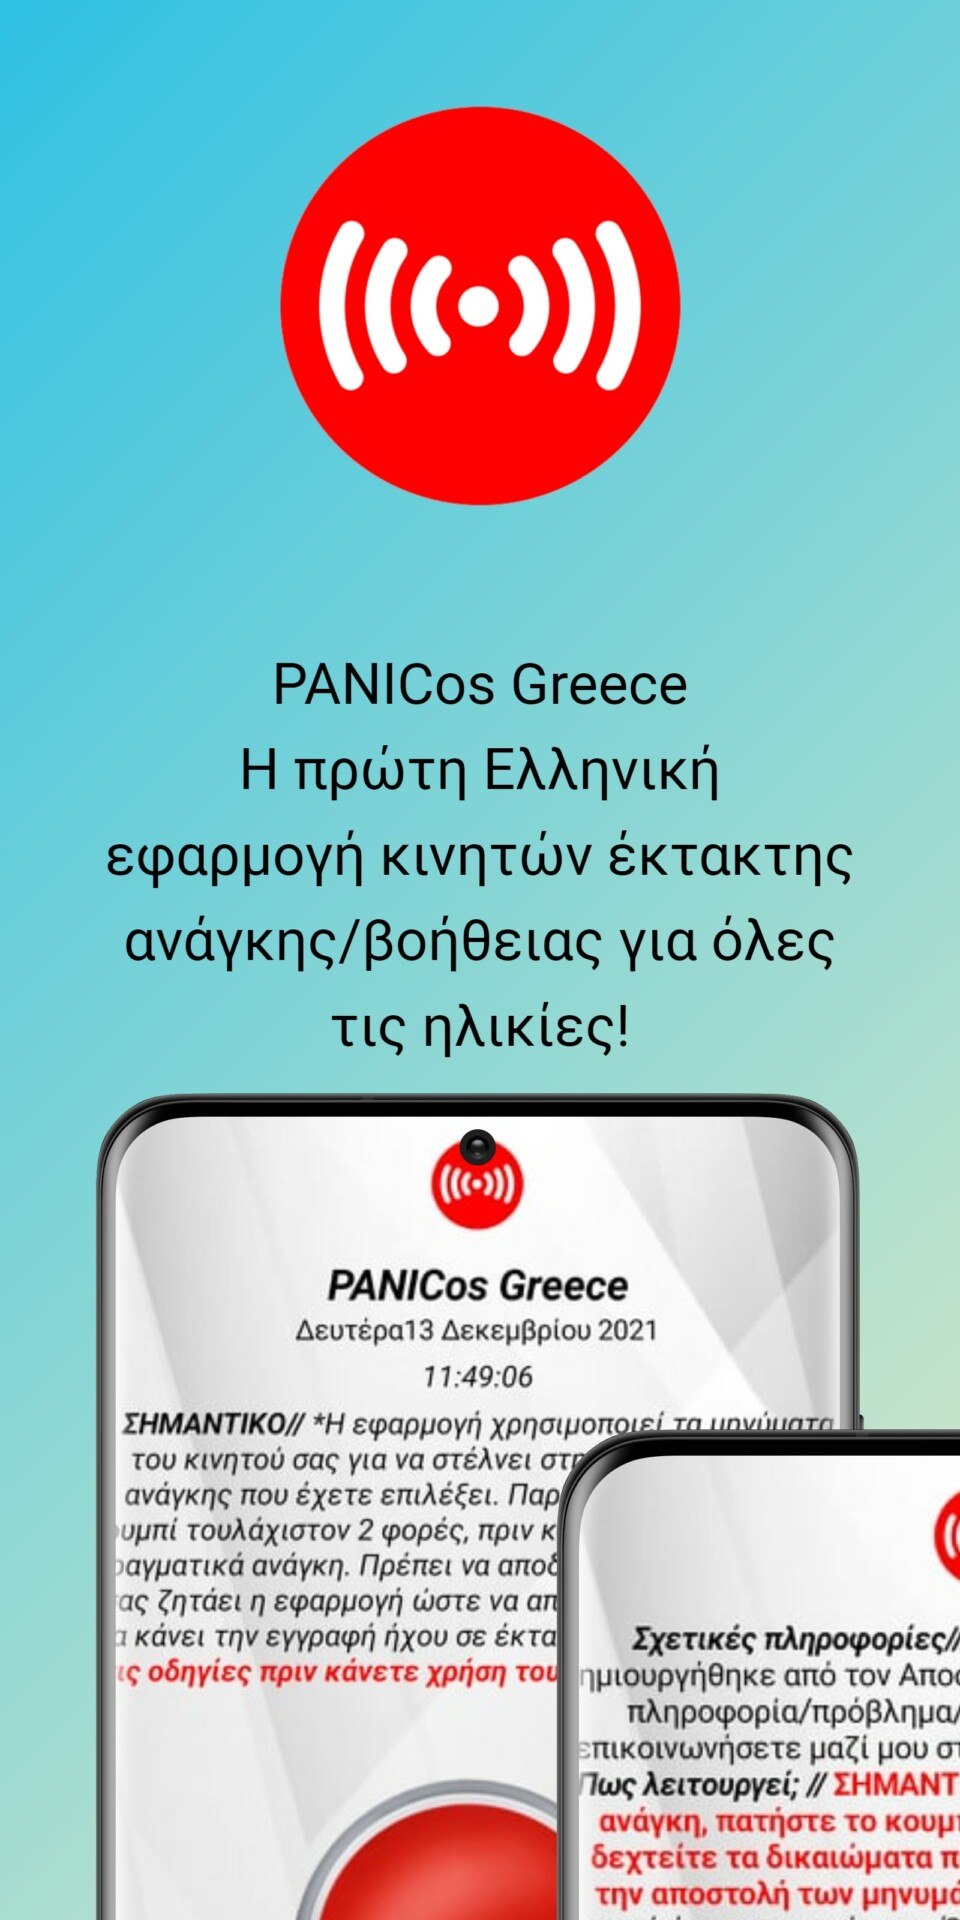 Η εφαρμογή PANICos Greece